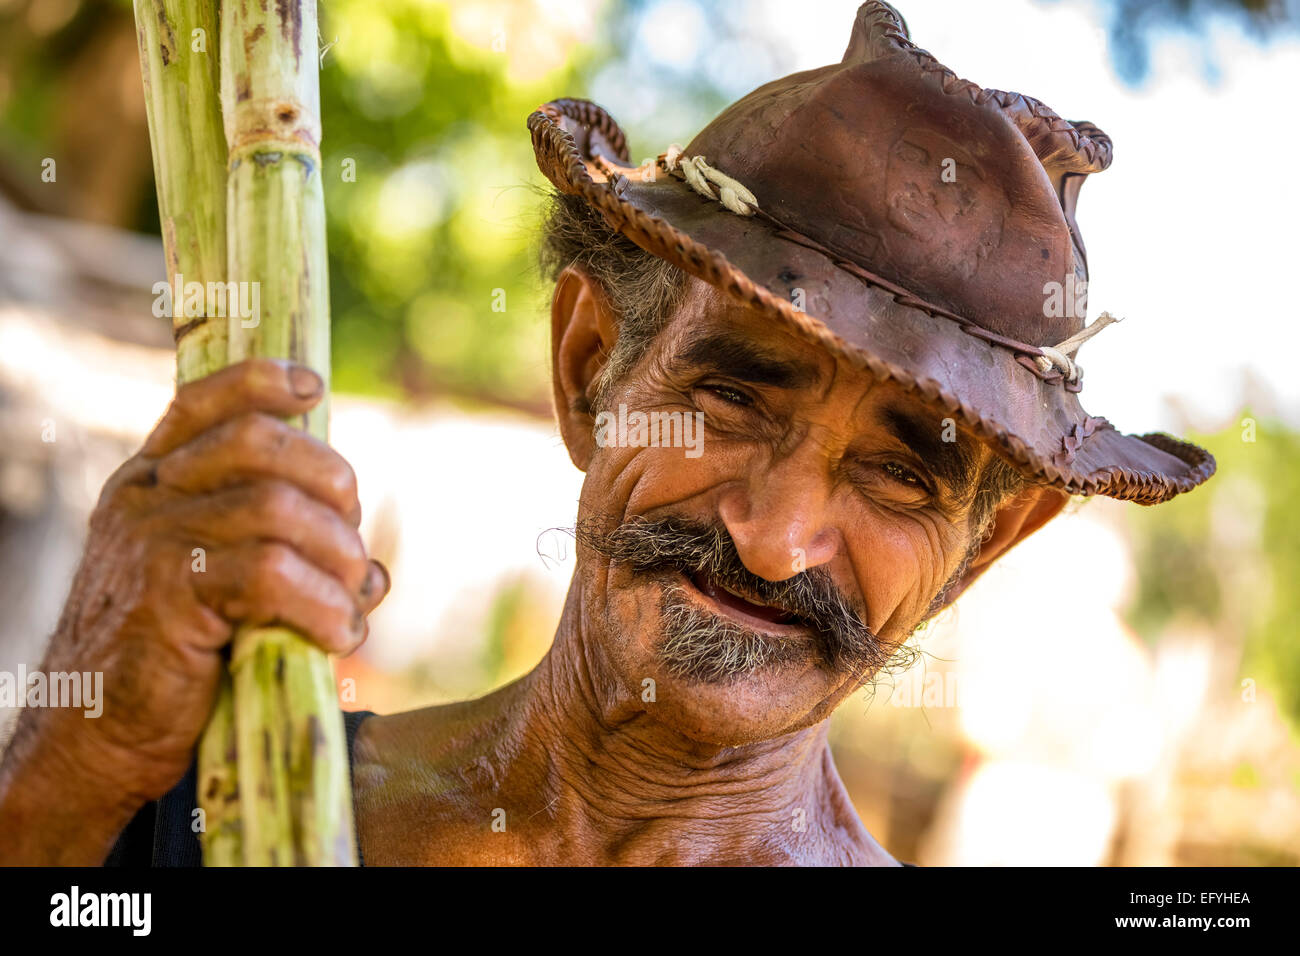 Farmer holding de canne à sucre canne à sucre, plantation de canne à sucre, Valle de los Ingenios, Trinidad, la province de Sancti Spiritus, Cuba Banque D'Images